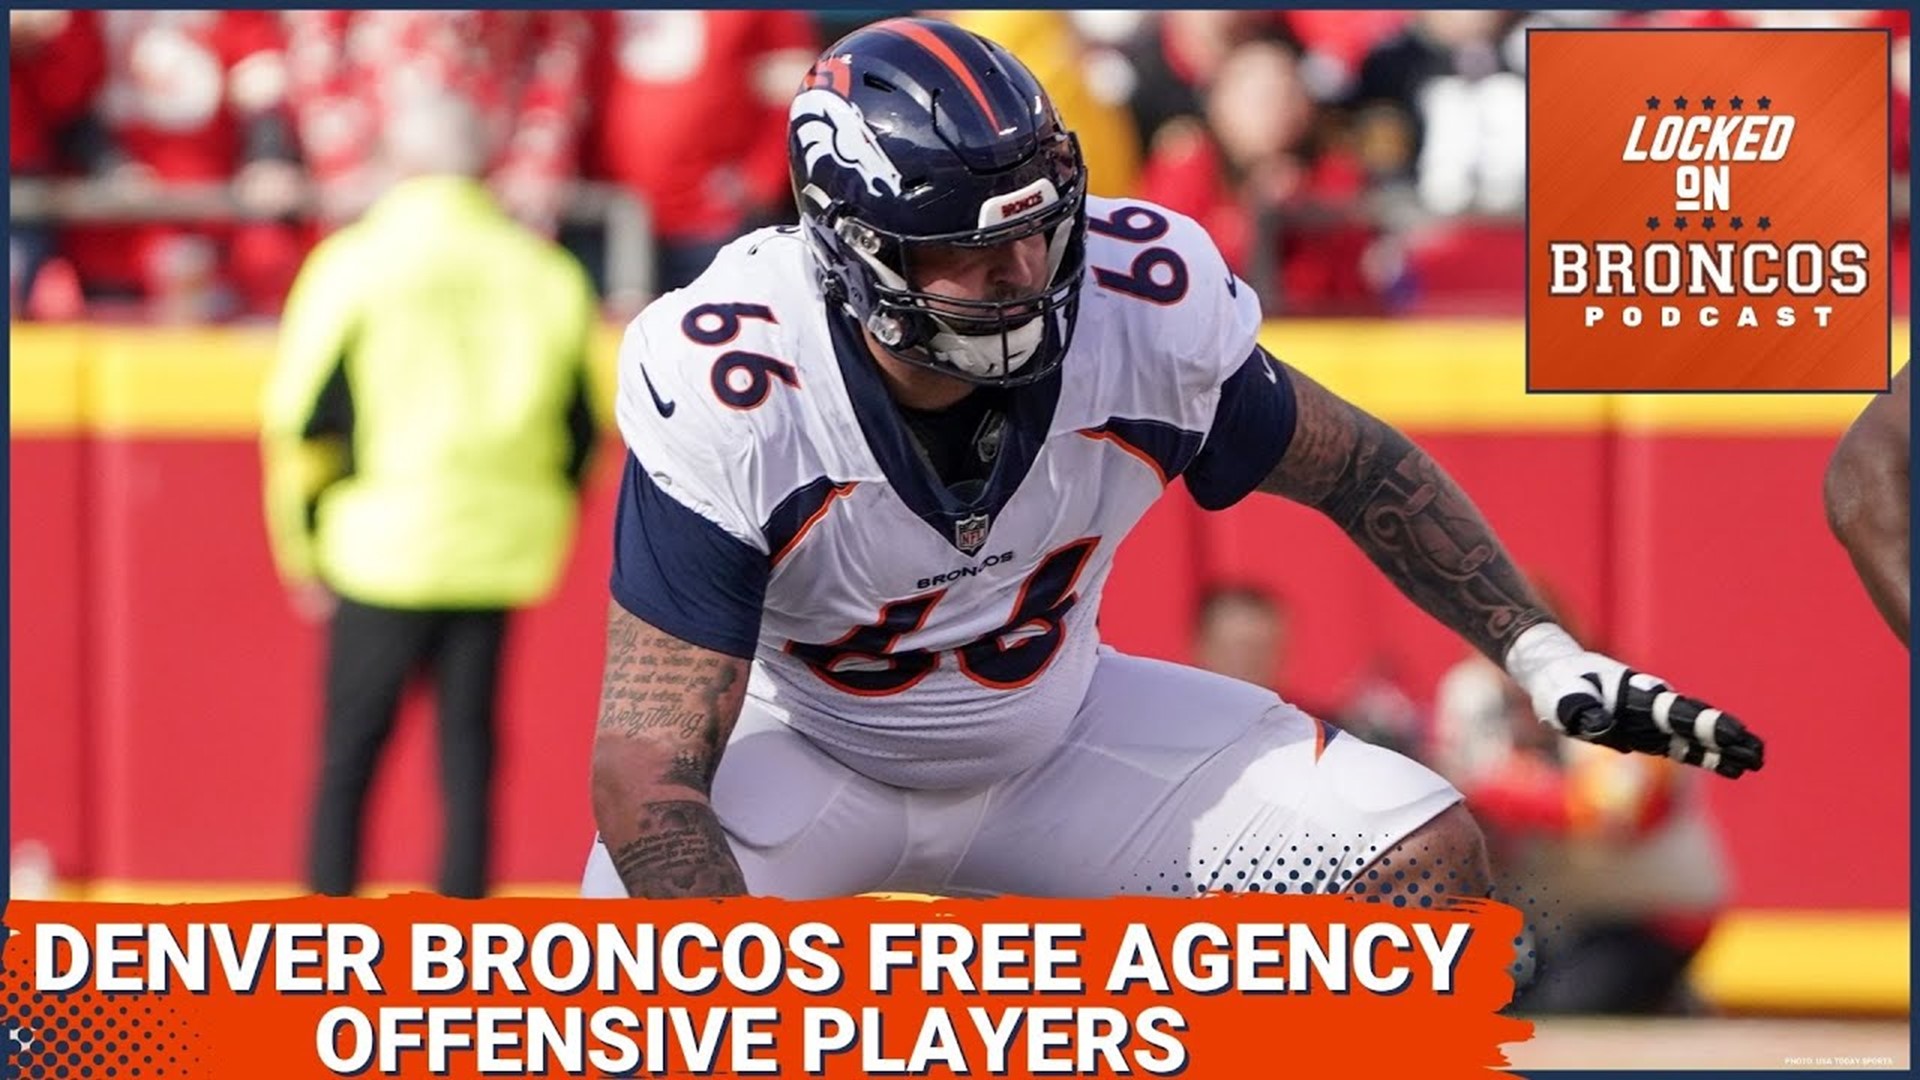 As Denver Broncos Free Agency begins, should Dalton Risner stay or go?